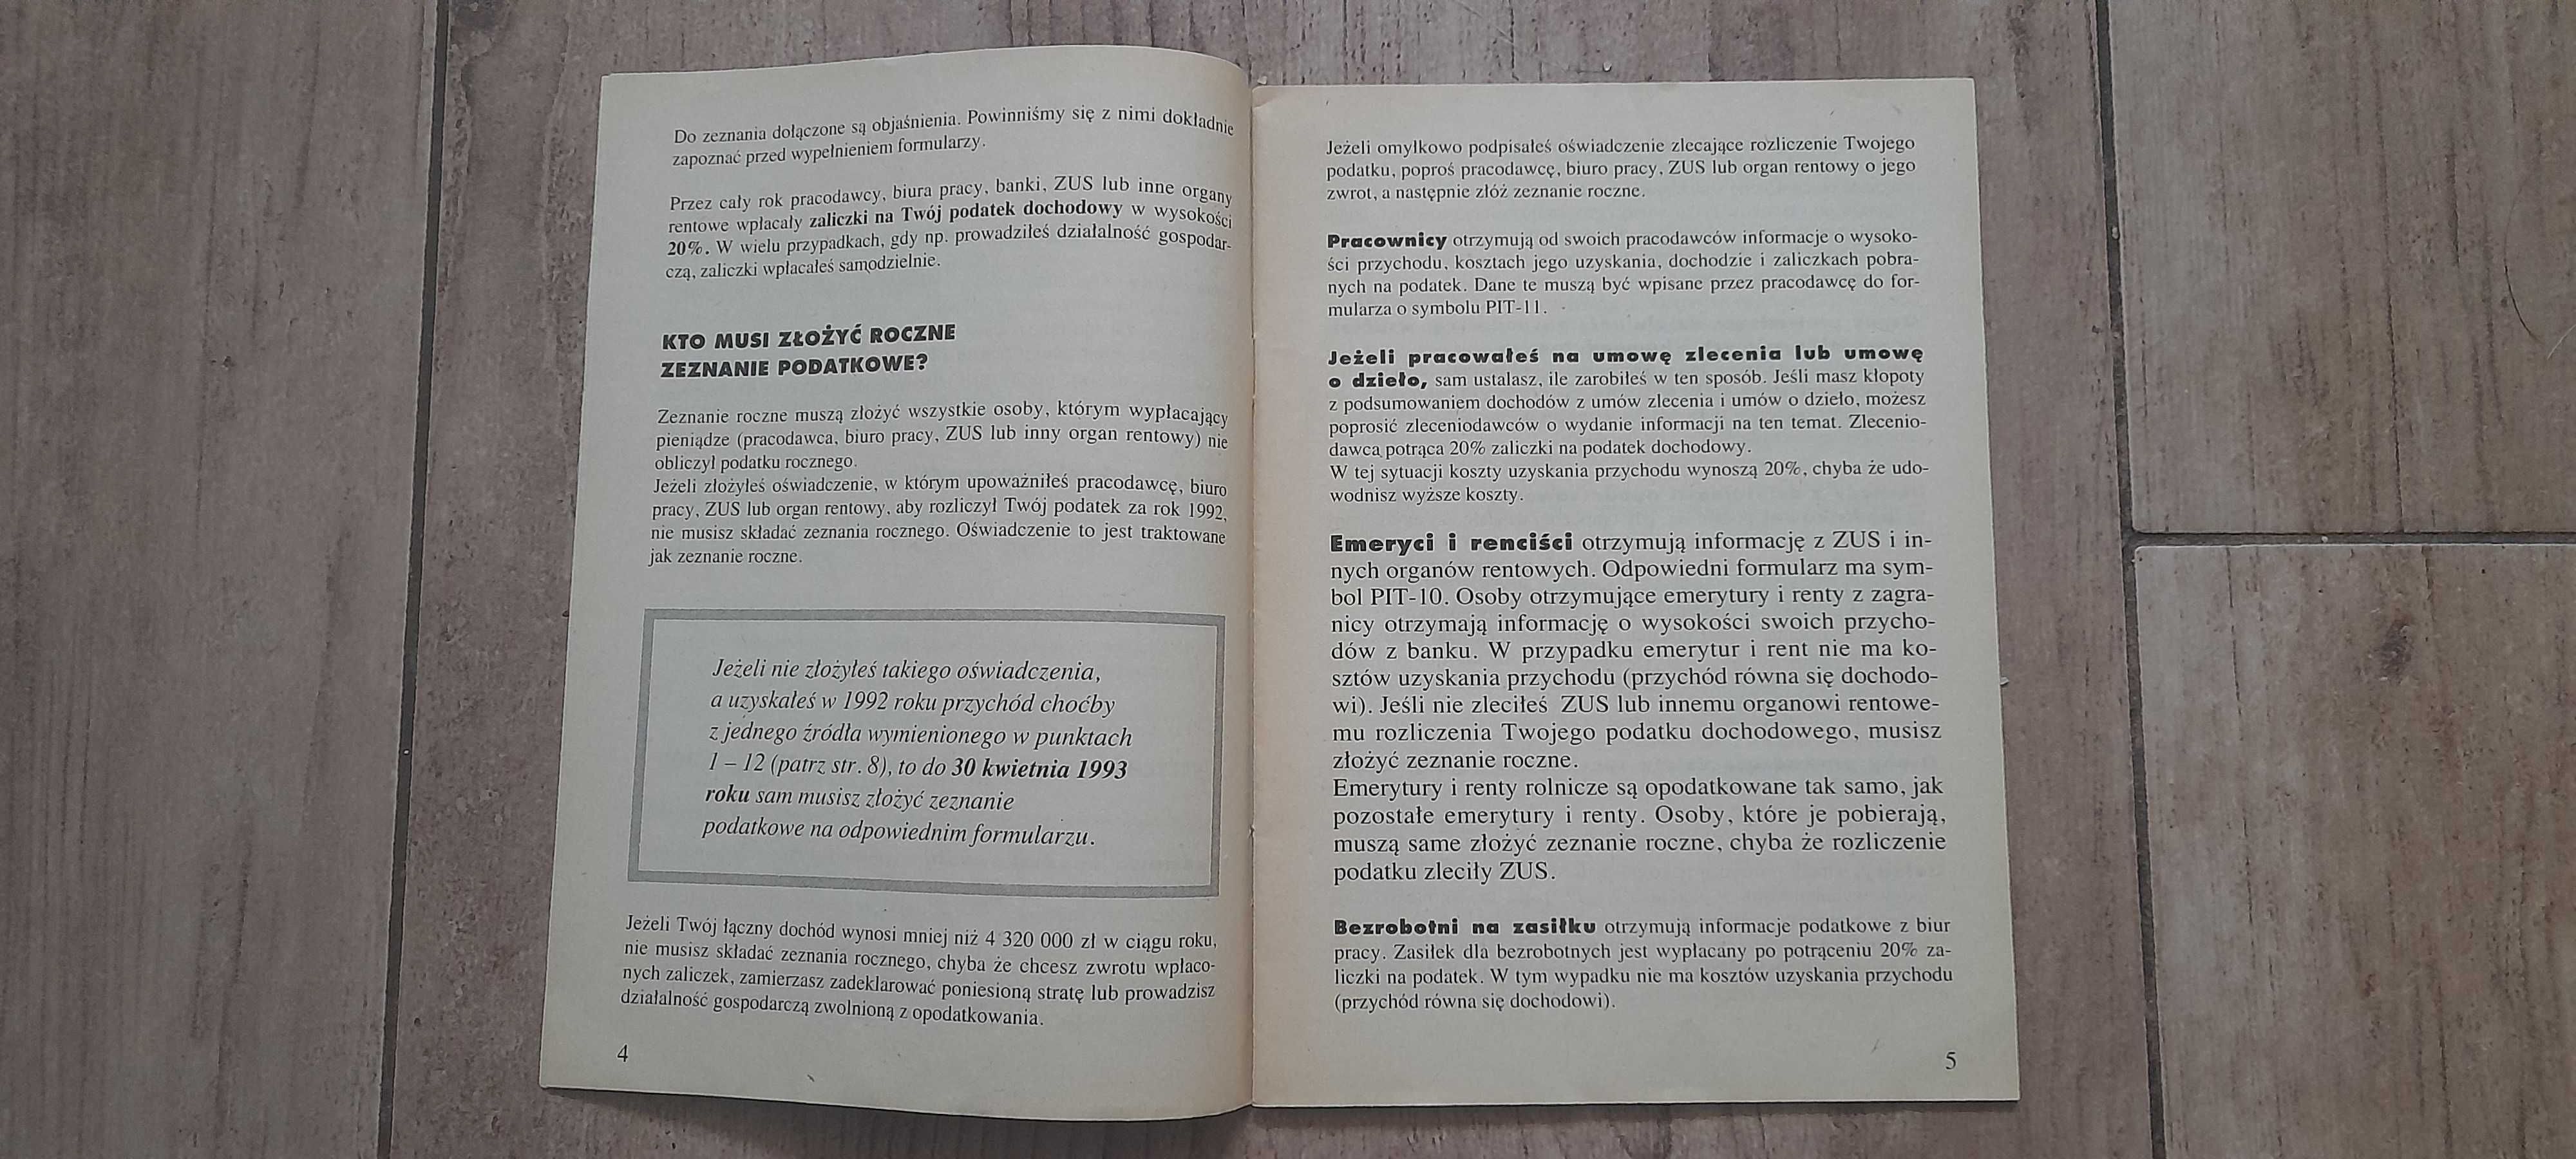 "Jak płacić podatek dochodowy od osób fizycznych za rok 1992" broszura